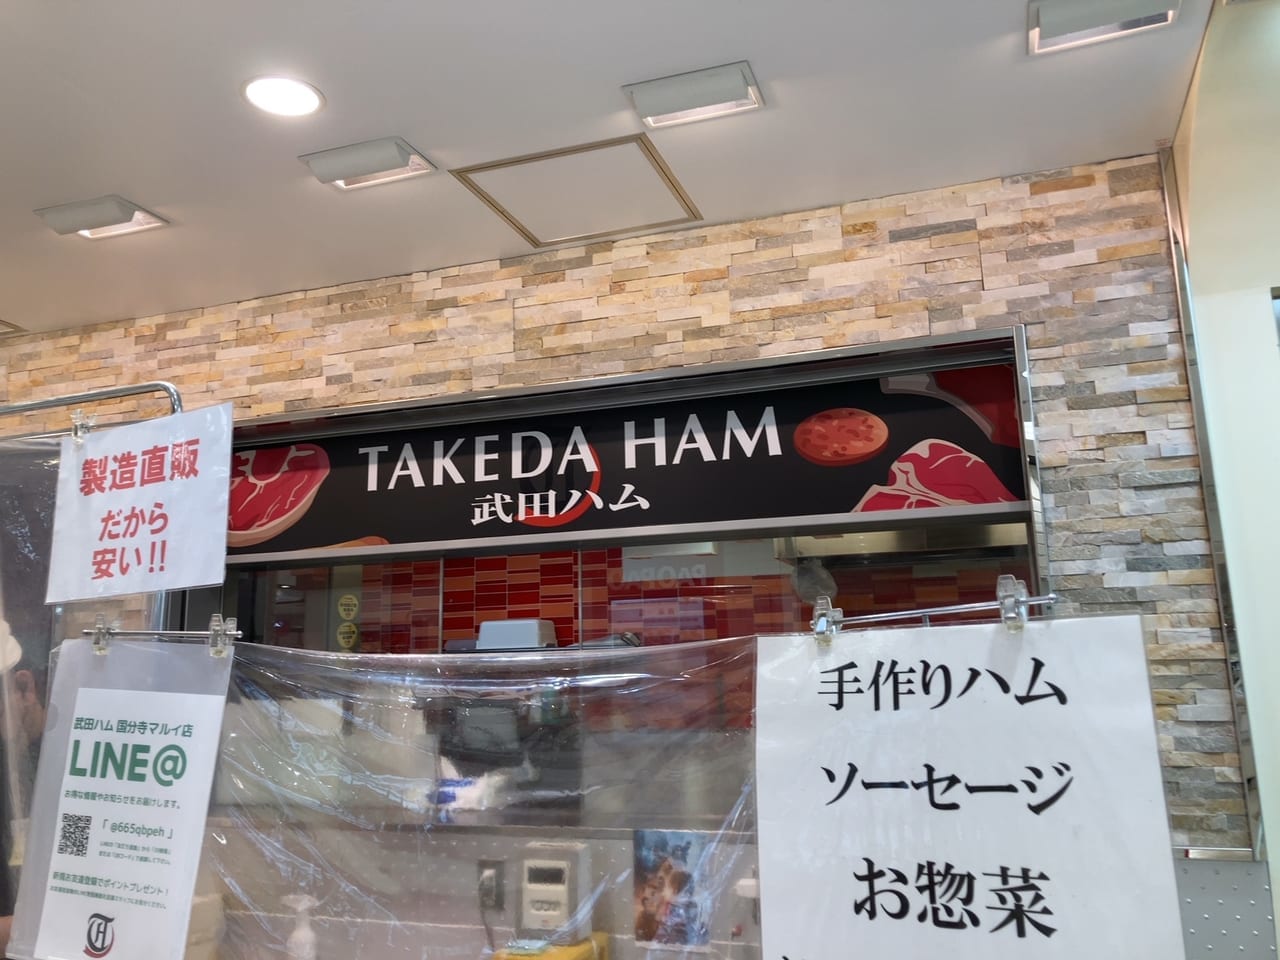 数少ない直営店・・・マルイ地下1階『武田ハム』が6月27日で閉店のようです。